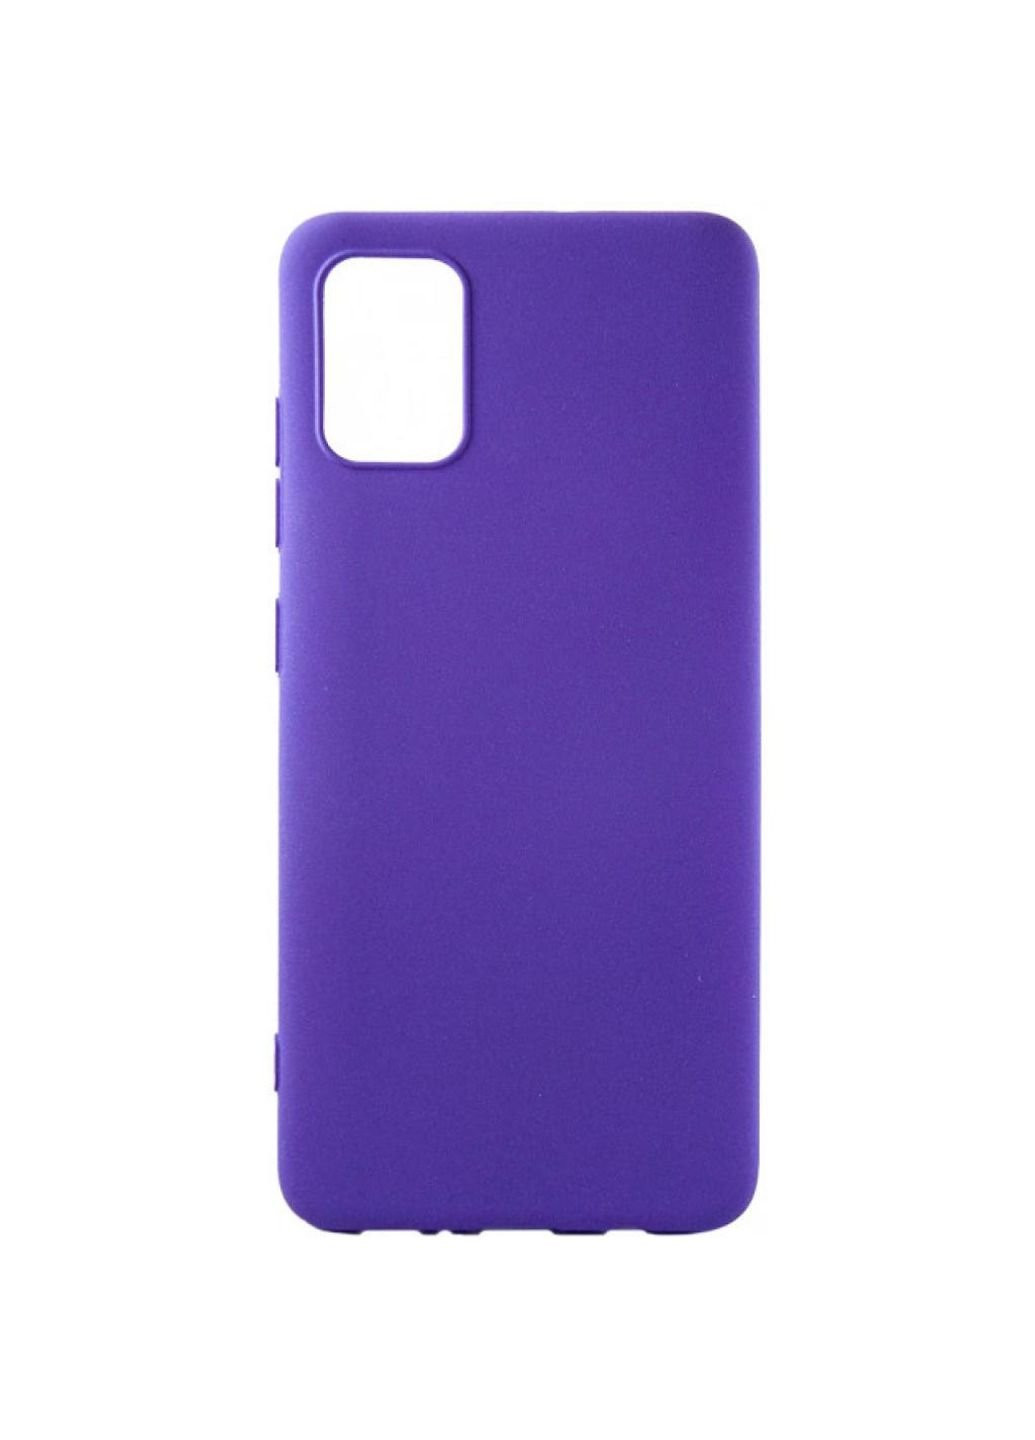 Чехол для мобильного телефона Carbon Samsung Galaxy A71, violet (DG-TPU-CRBN-53) (DG-TPU-CRBN-53) DENGOS (252572588)